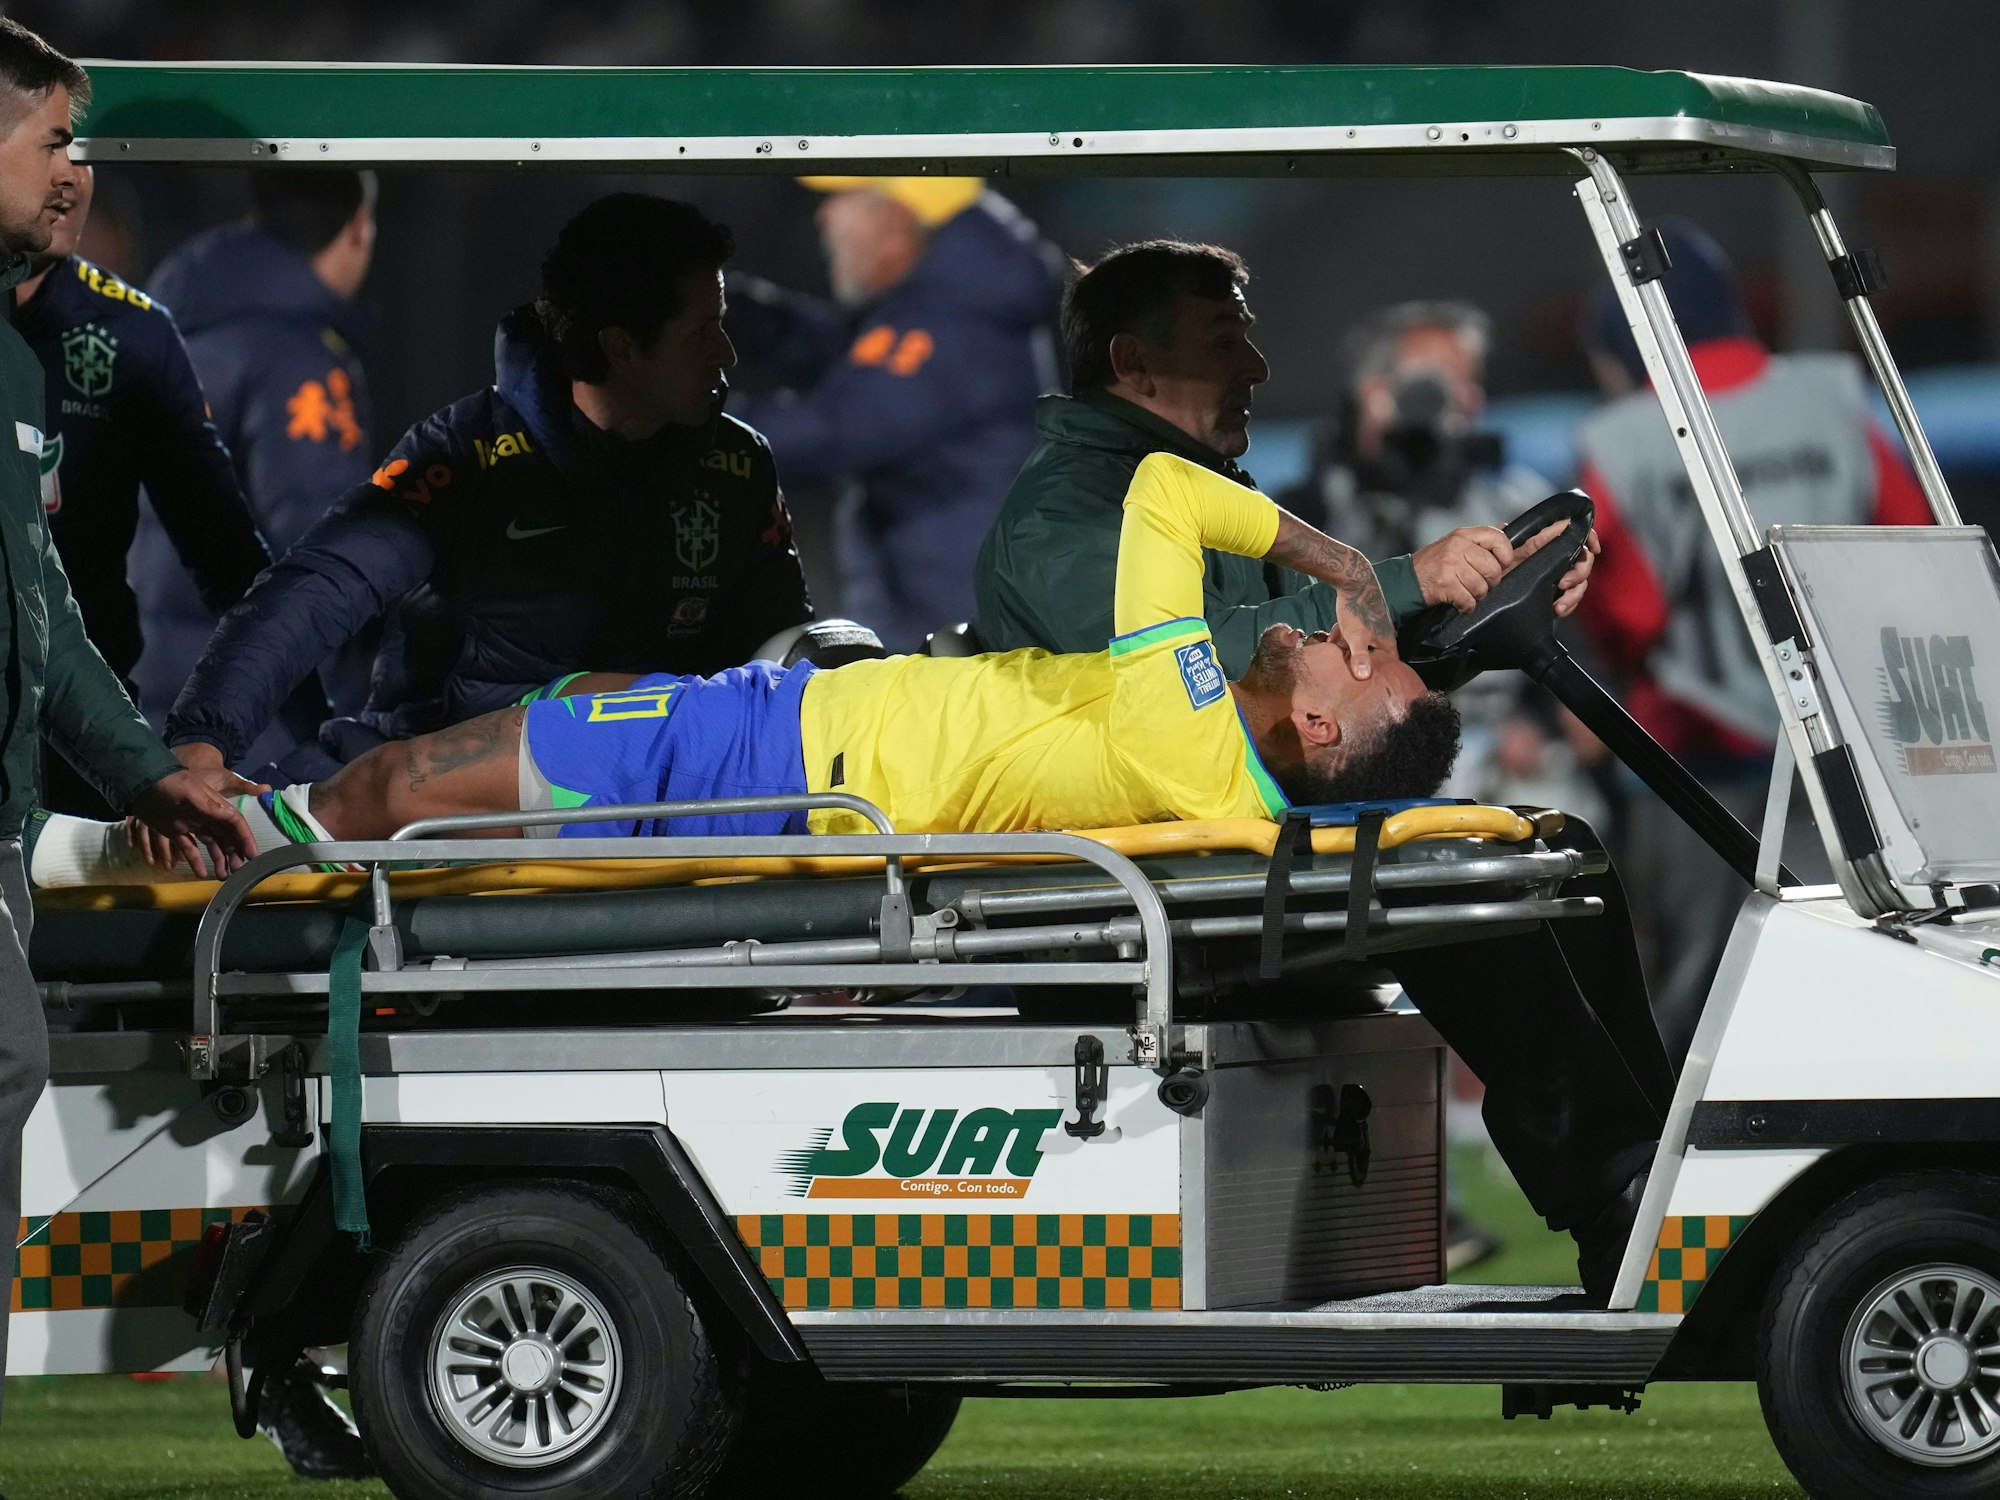 Brasiliens Neymar liegt auf der Trage und wird von einem Fahrzeug vomSpielfeld gefahren.